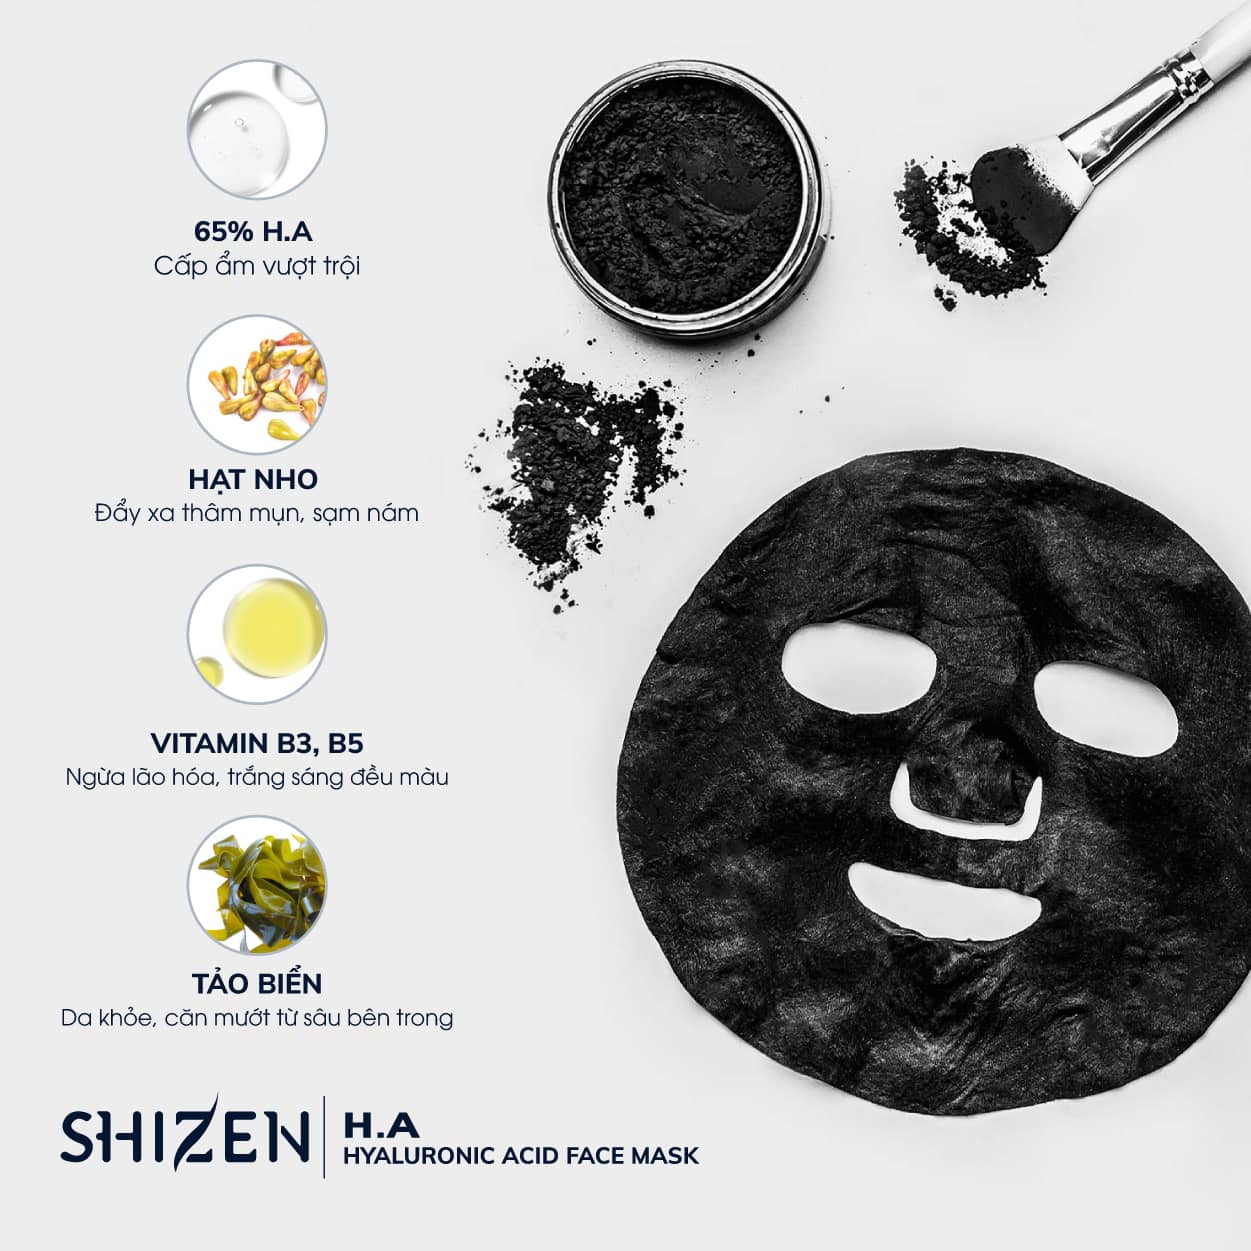 Mặt nạ cấp ẩm Shizen chiết xuất từ các thành phần tự nhiên